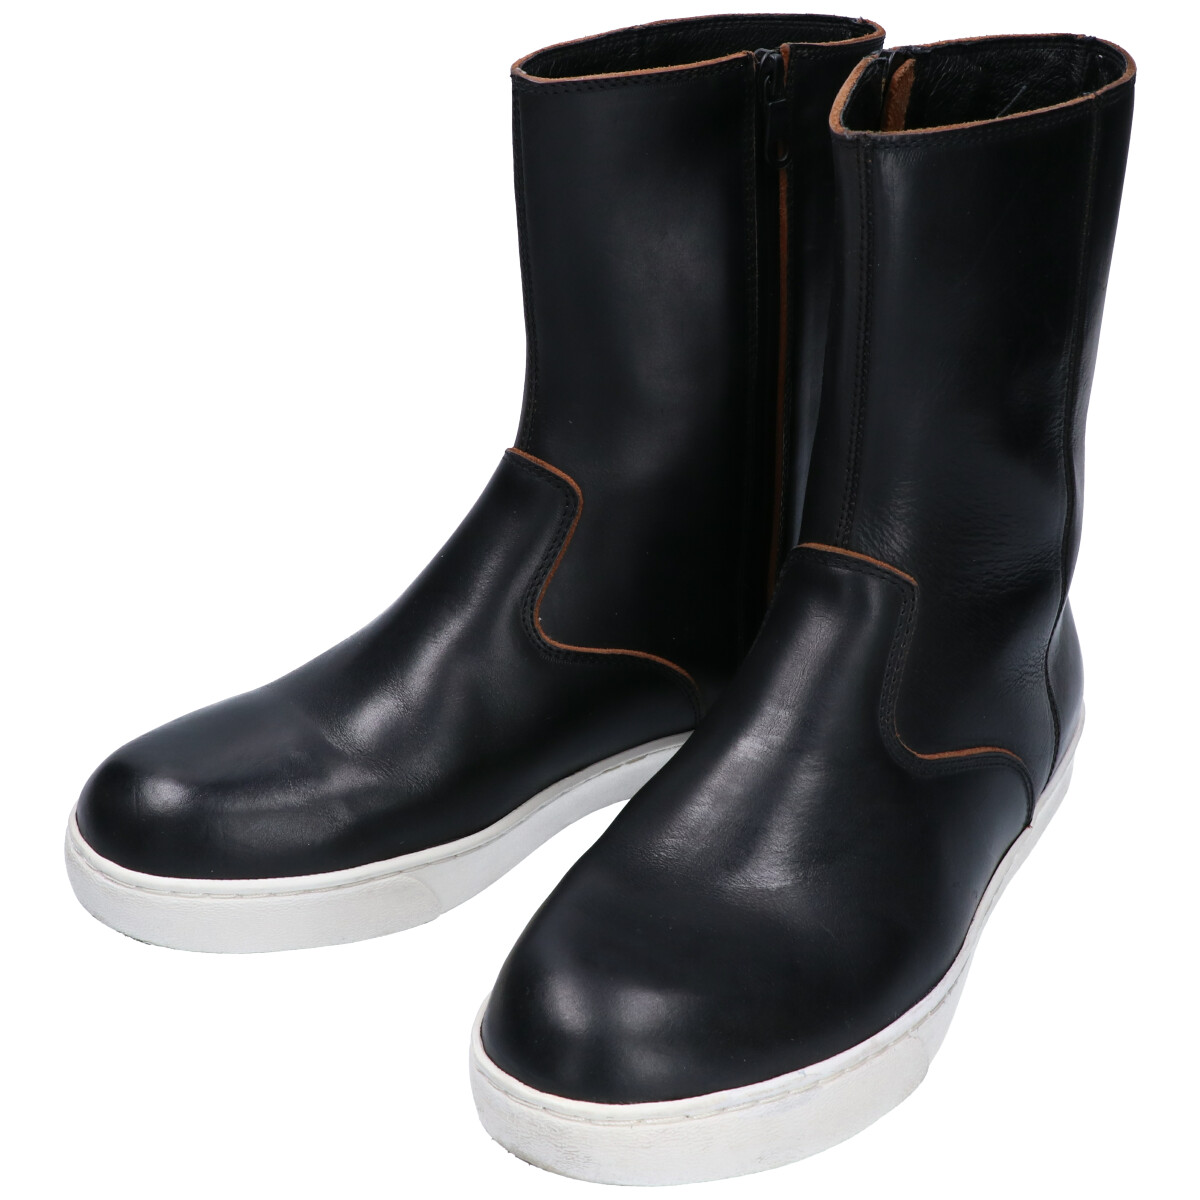 リップヴァンウィンクルのr15B-13 Side Zip Boots サイドジップブーツの買取実績です。